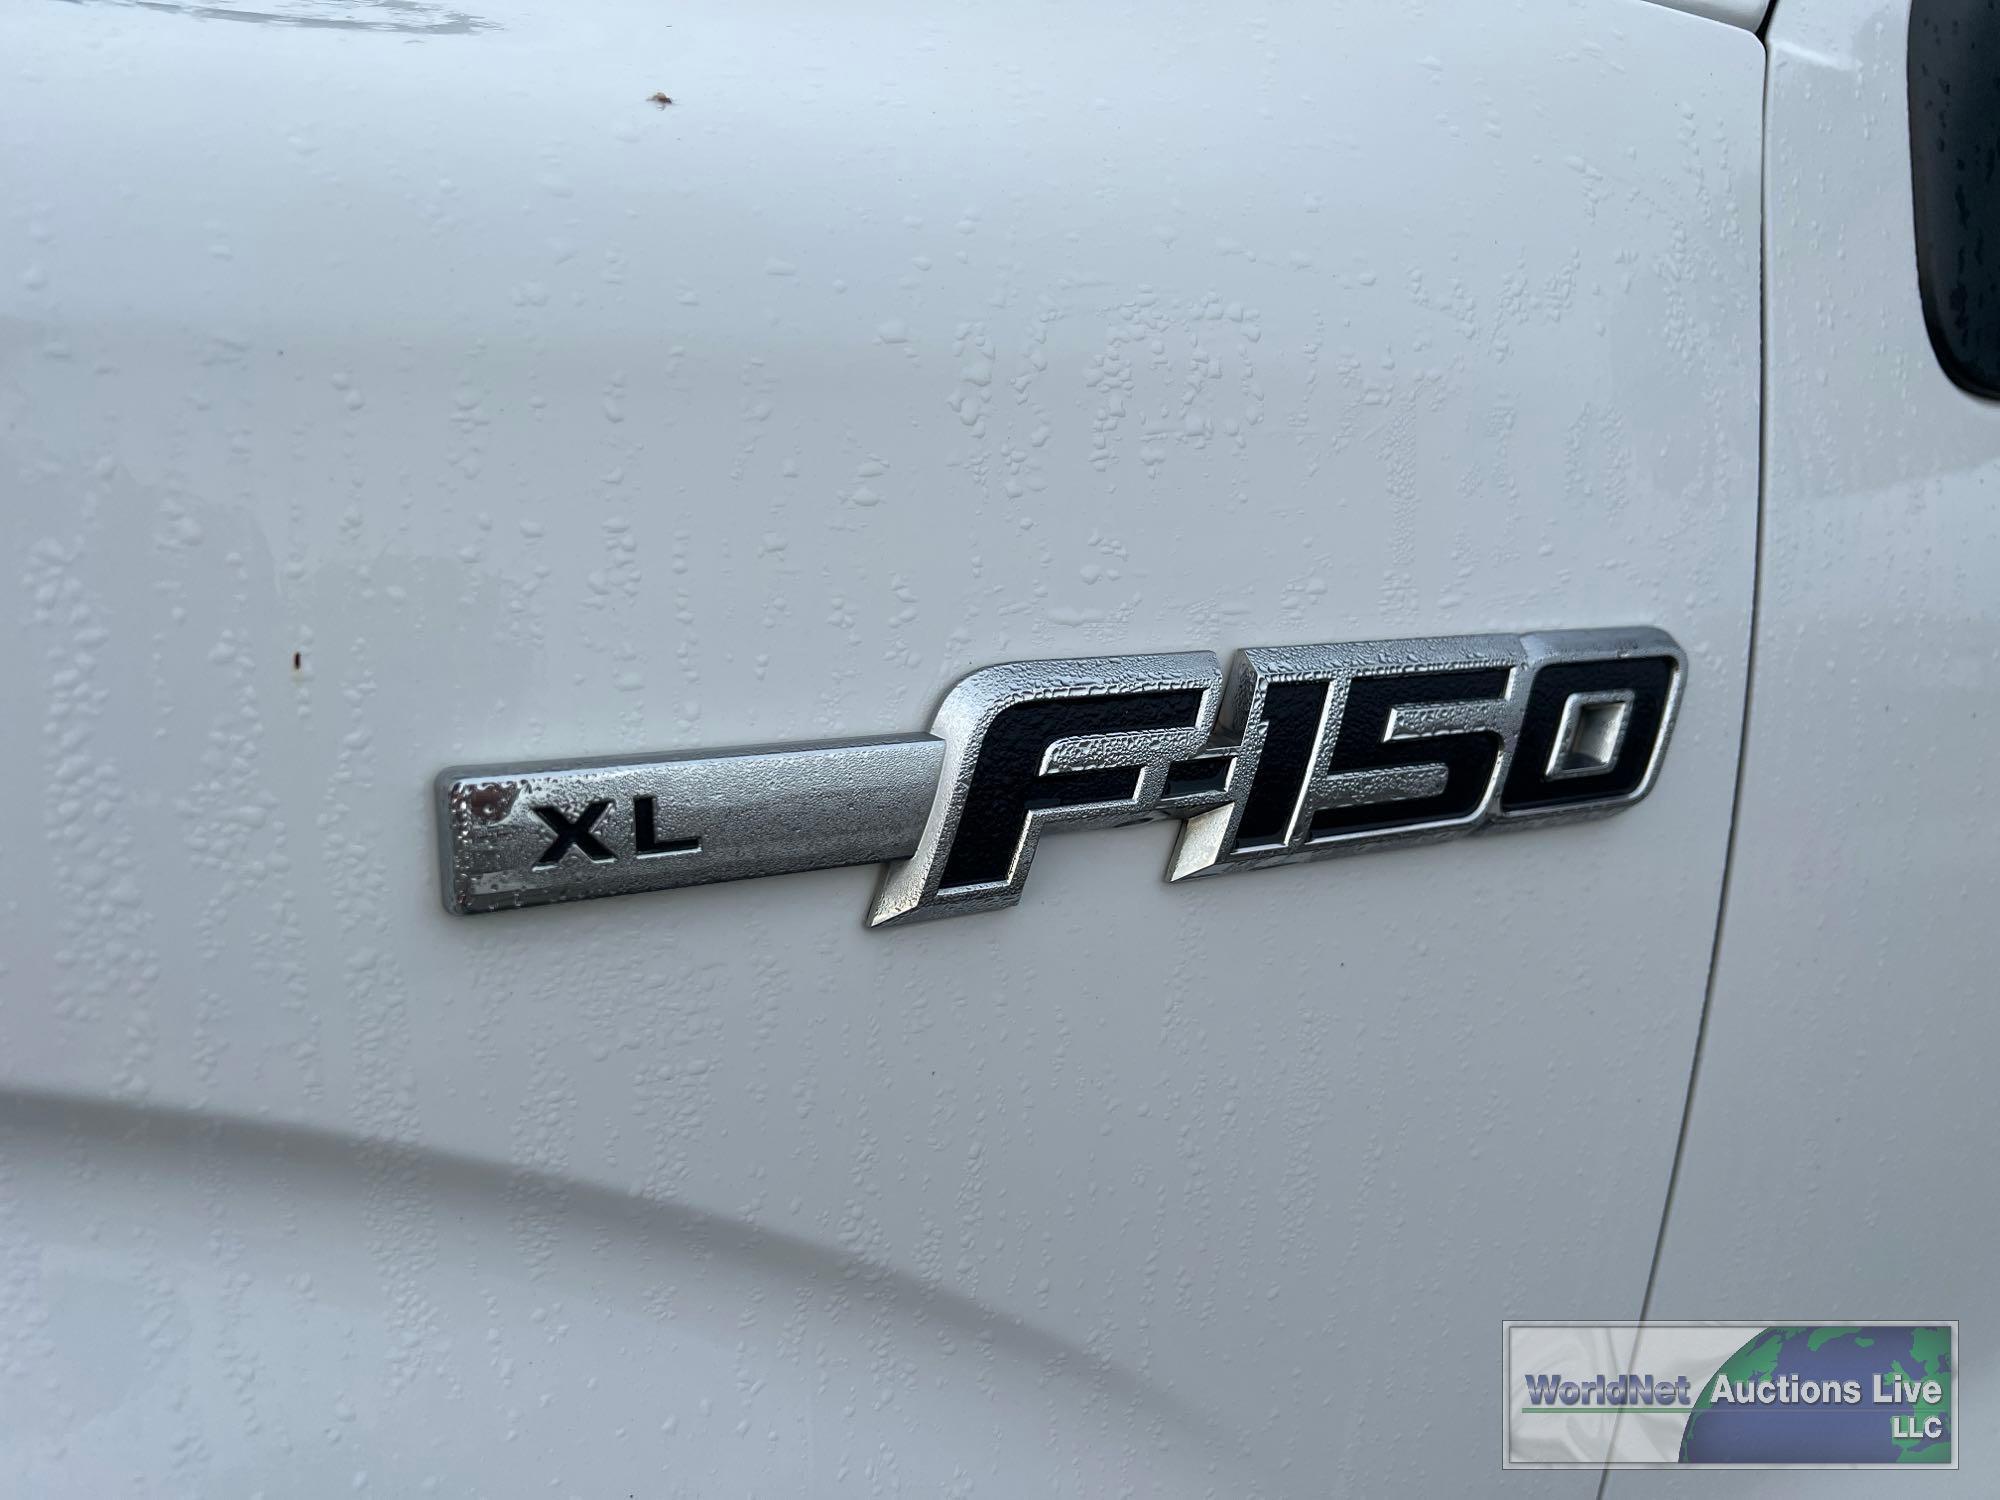 2009 FORD F-150XL PICKUP TRUCK, VIN # 1FTRX12W59FB12409